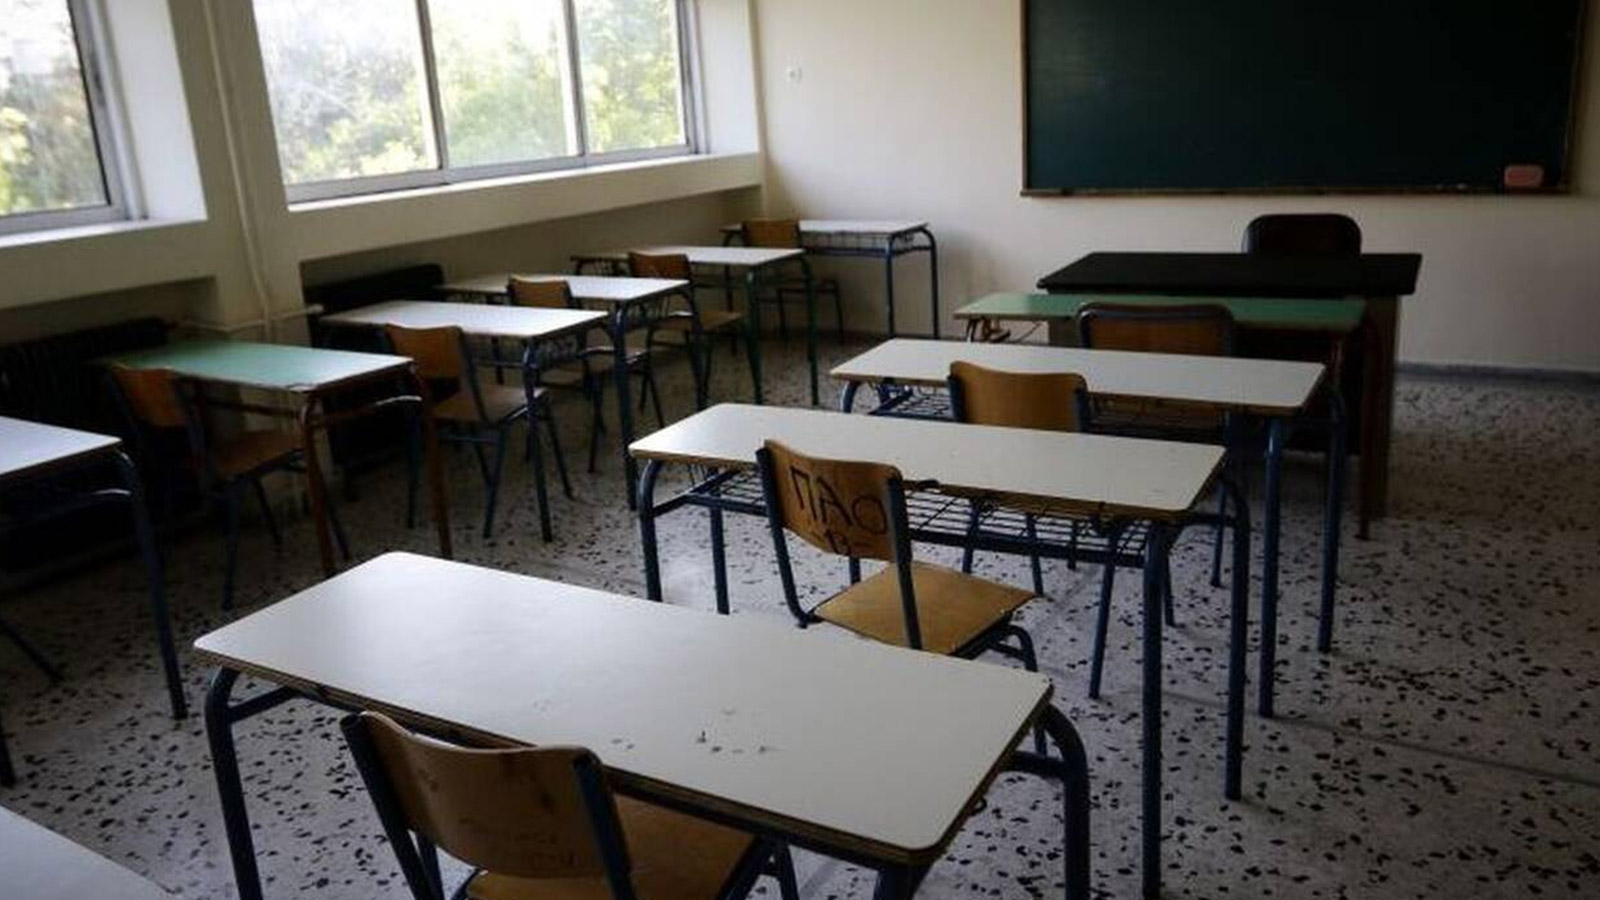 Οι διευθυντές σχολείων ζητούν να γίνουν οι απαραίτητοι έλεγχοι πριν την έναρξη της νέας σχολικής χρονιάς